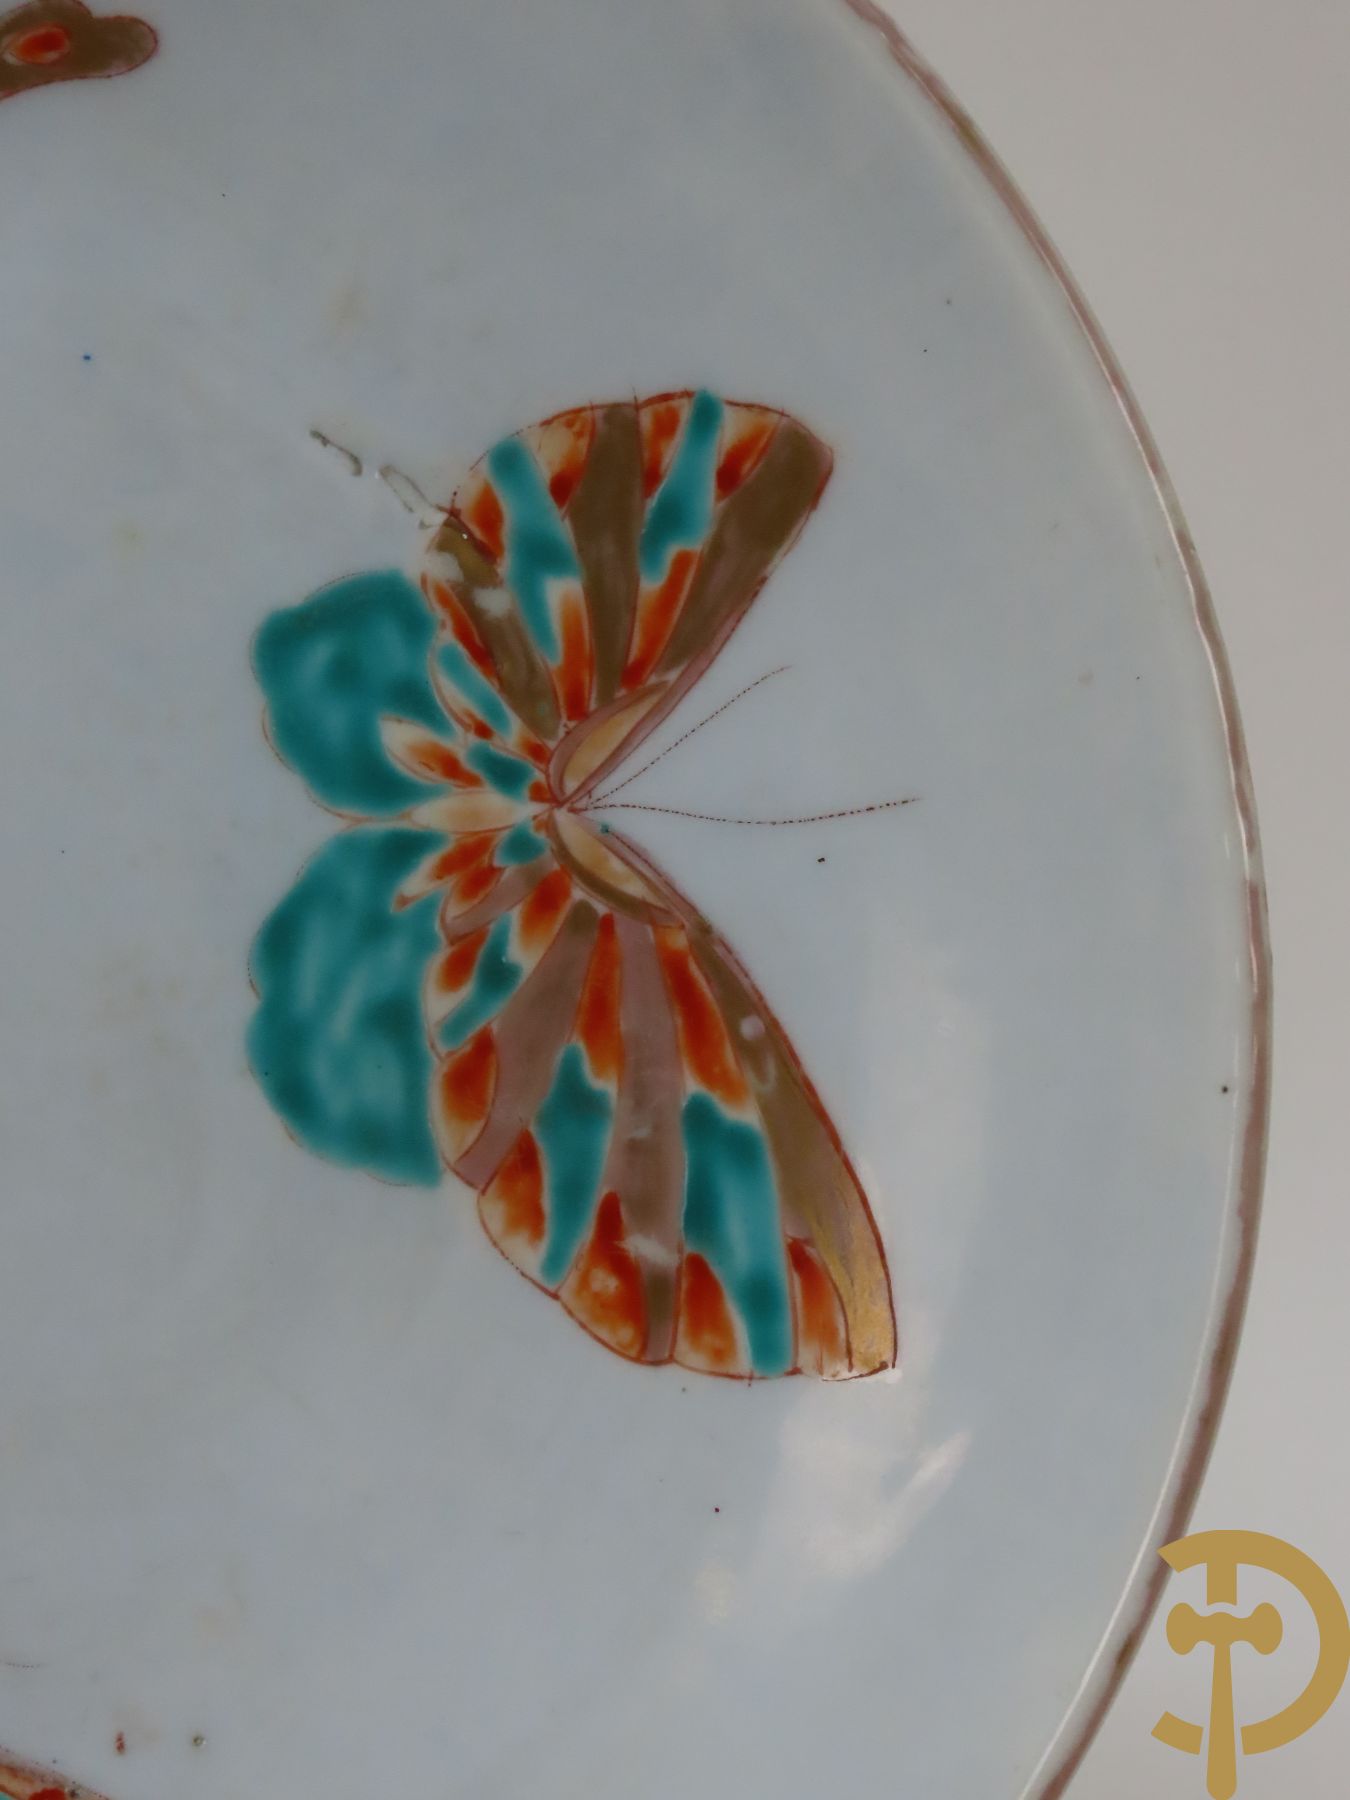 Paar porseleinen borden met vlinderdecor